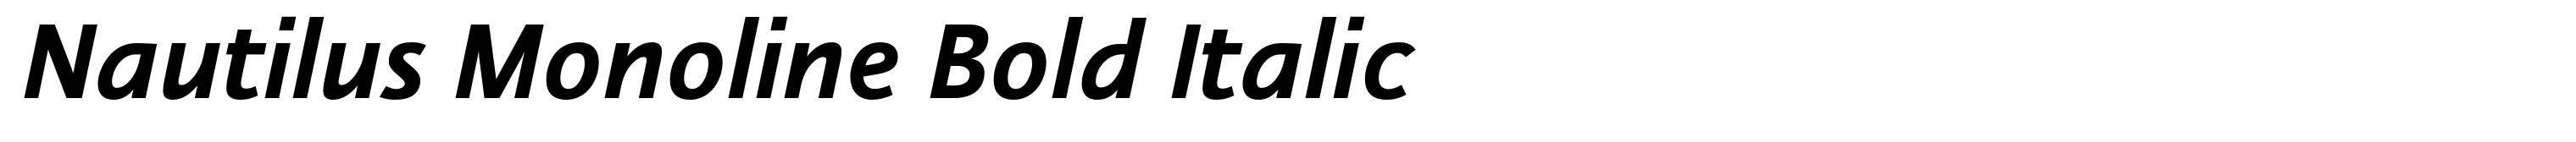 Nautilus Monoline Bold Italic